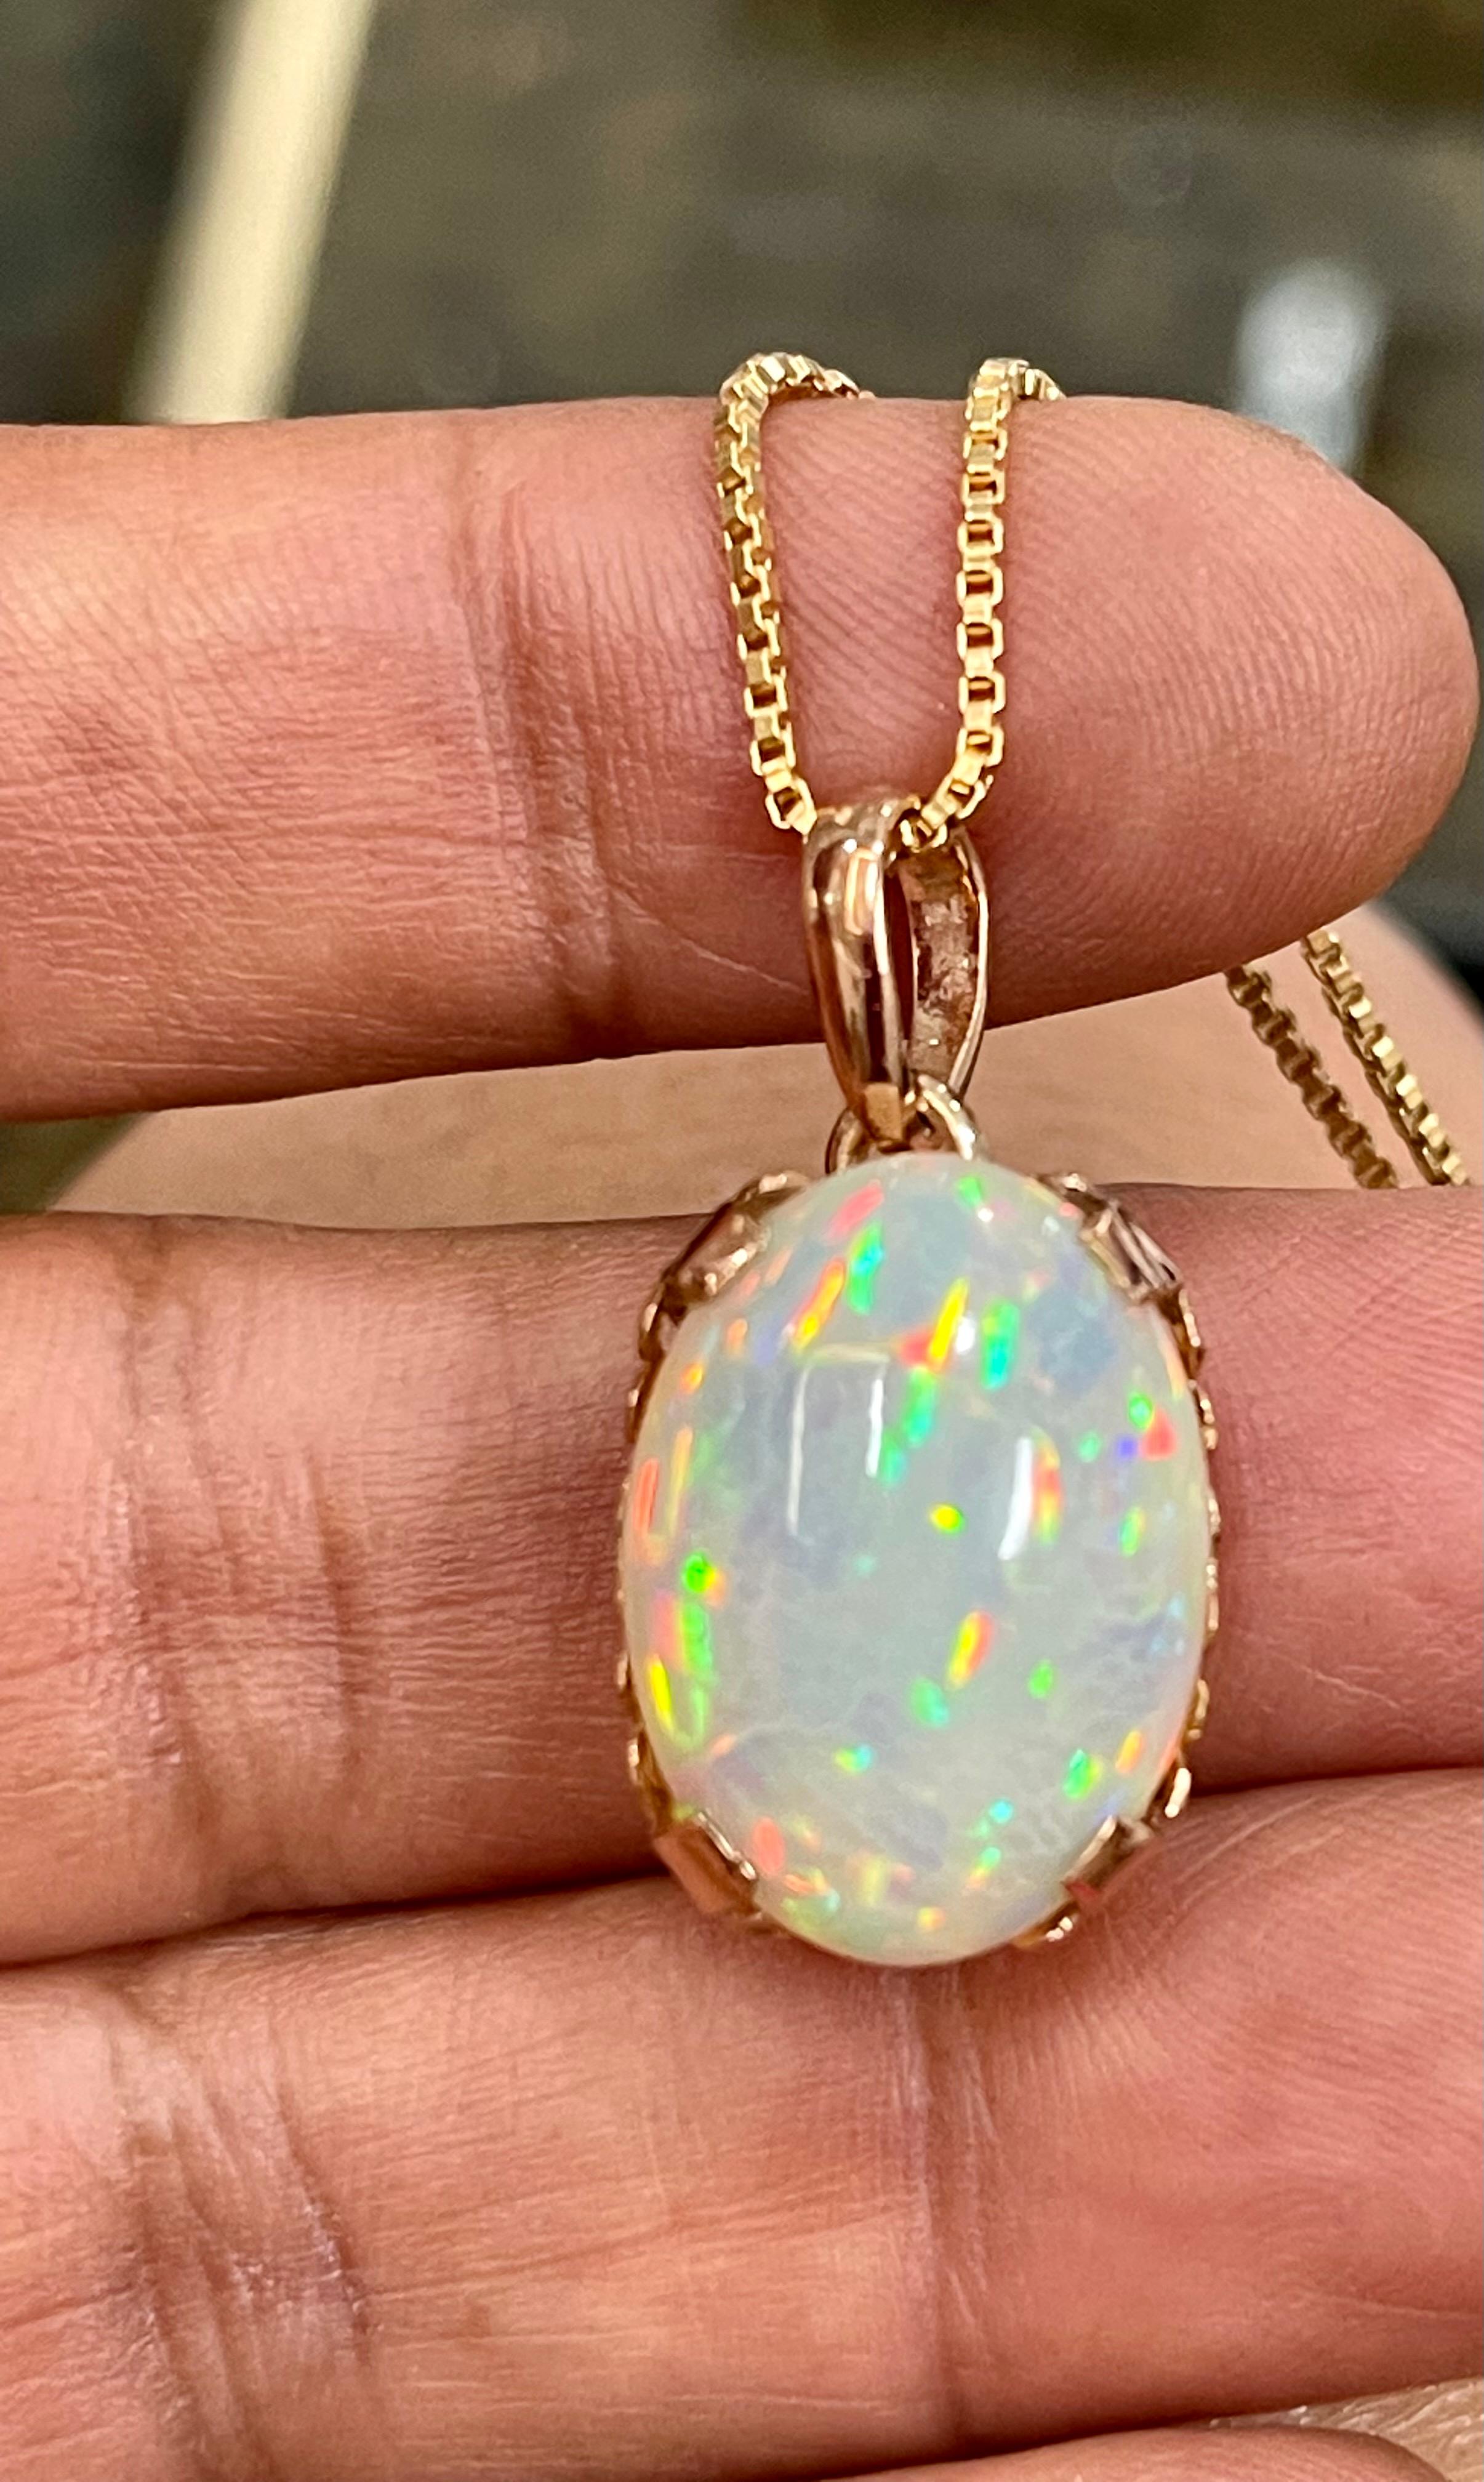 9 Carat Oval Ethiopian Opal Pendant / Necklace 18 Karat + 18 Kt Gold Chain 12